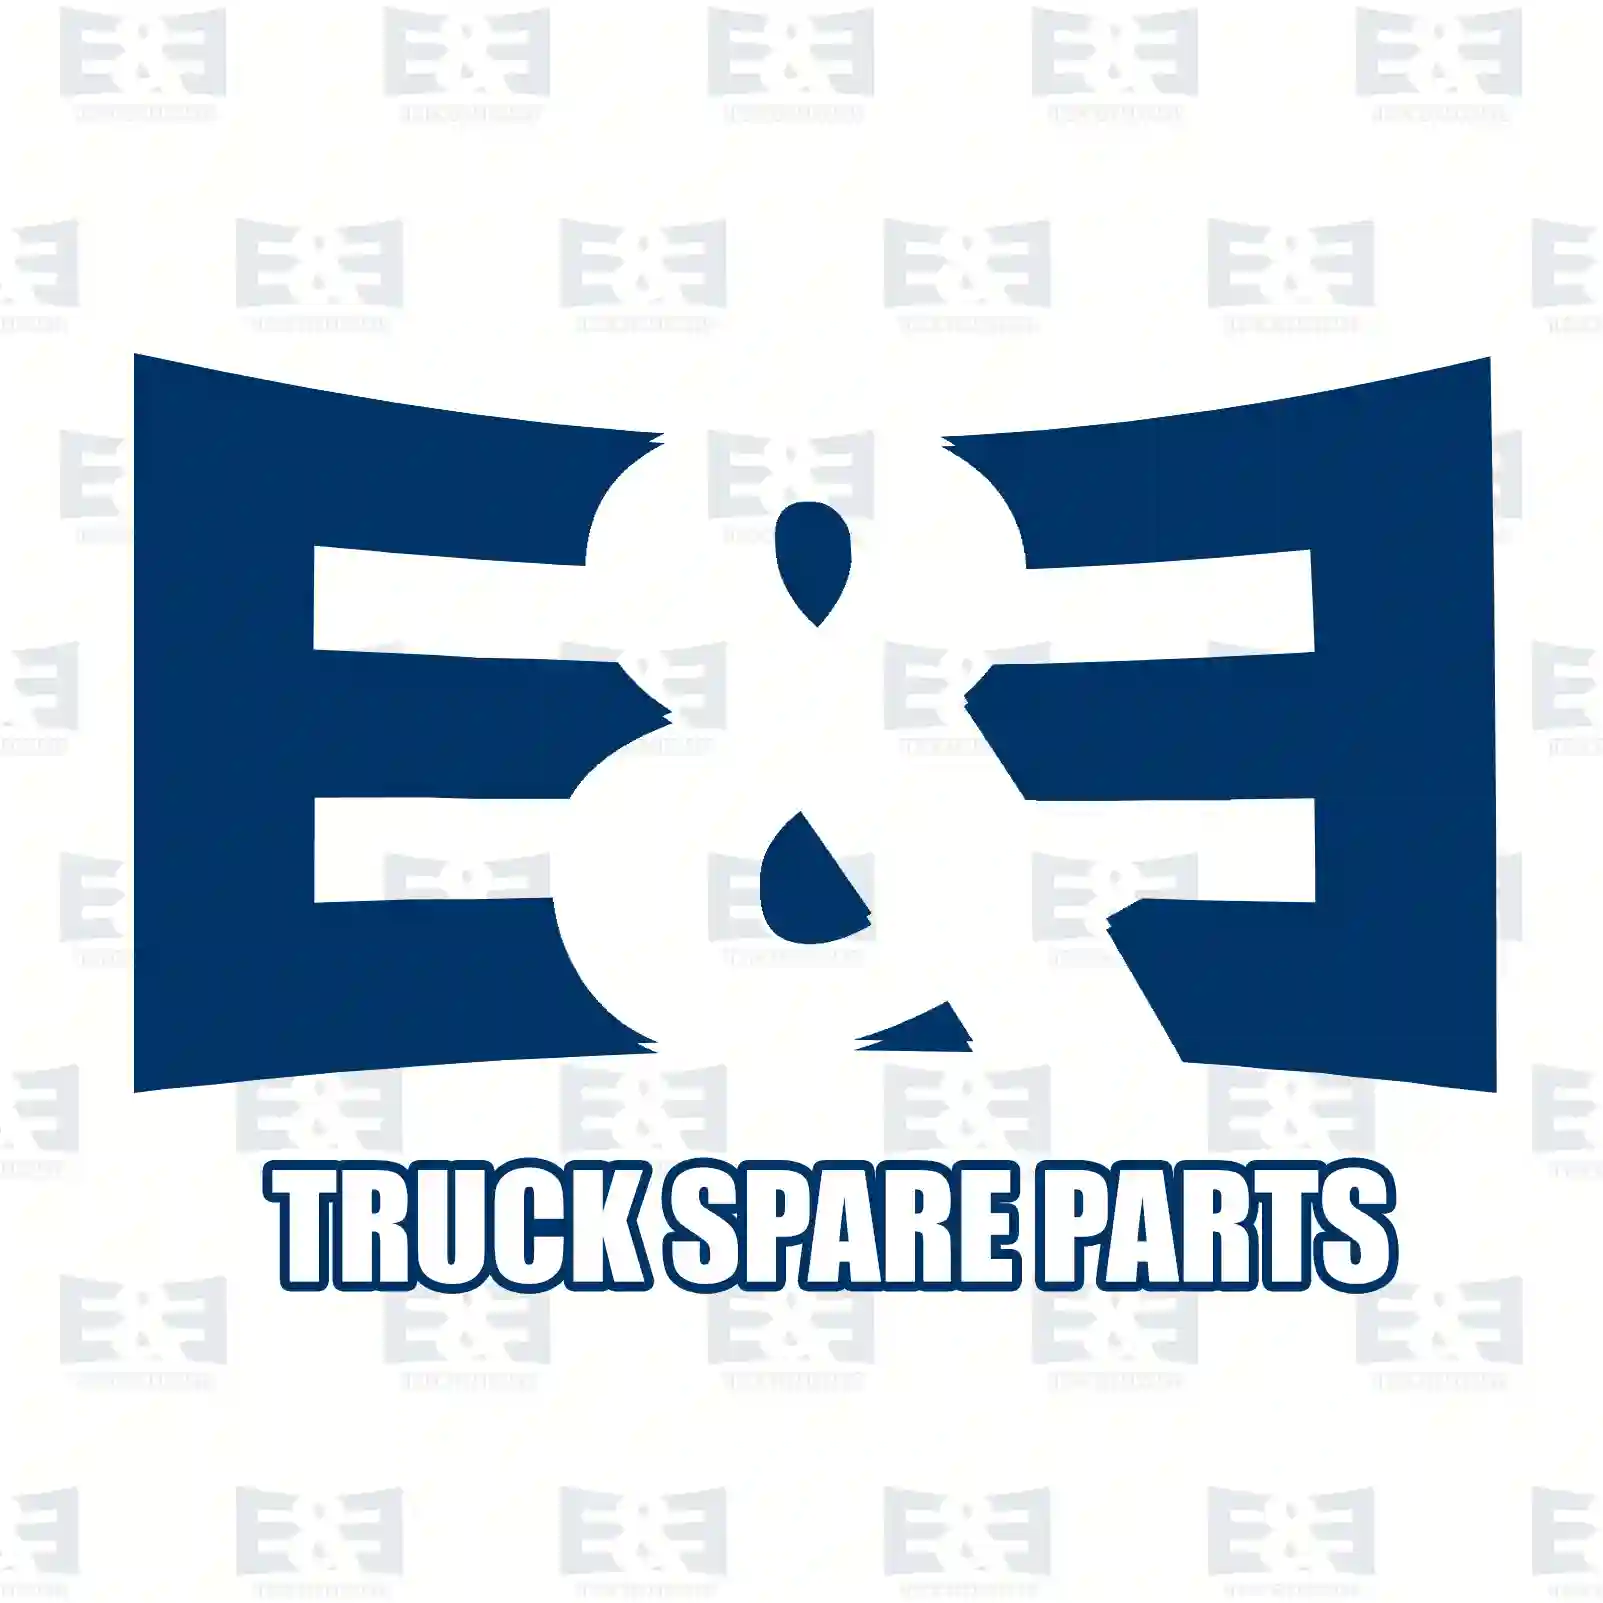 Repair kit, air dryer, 2E2293411, 1753577S1, 1763425S1, 1770184S1, 1796161S1, 1897631S1, 1928589S1, 1941953S1, 2063357S1, 2308777S1 ||  2E2293411 E&E Truck Spare Parts | Truck Spare Parts, Auotomotive Spare Parts Repair kit, air dryer, 2E2293411, 1753577S1, 1763425S1, 1770184S1, 1796161S1, 1897631S1, 1928589S1, 1941953S1, 2063357S1, 2308777S1 ||  2E2293411 E&E Truck Spare Parts | Truck Spare Parts, Auotomotive Spare Parts